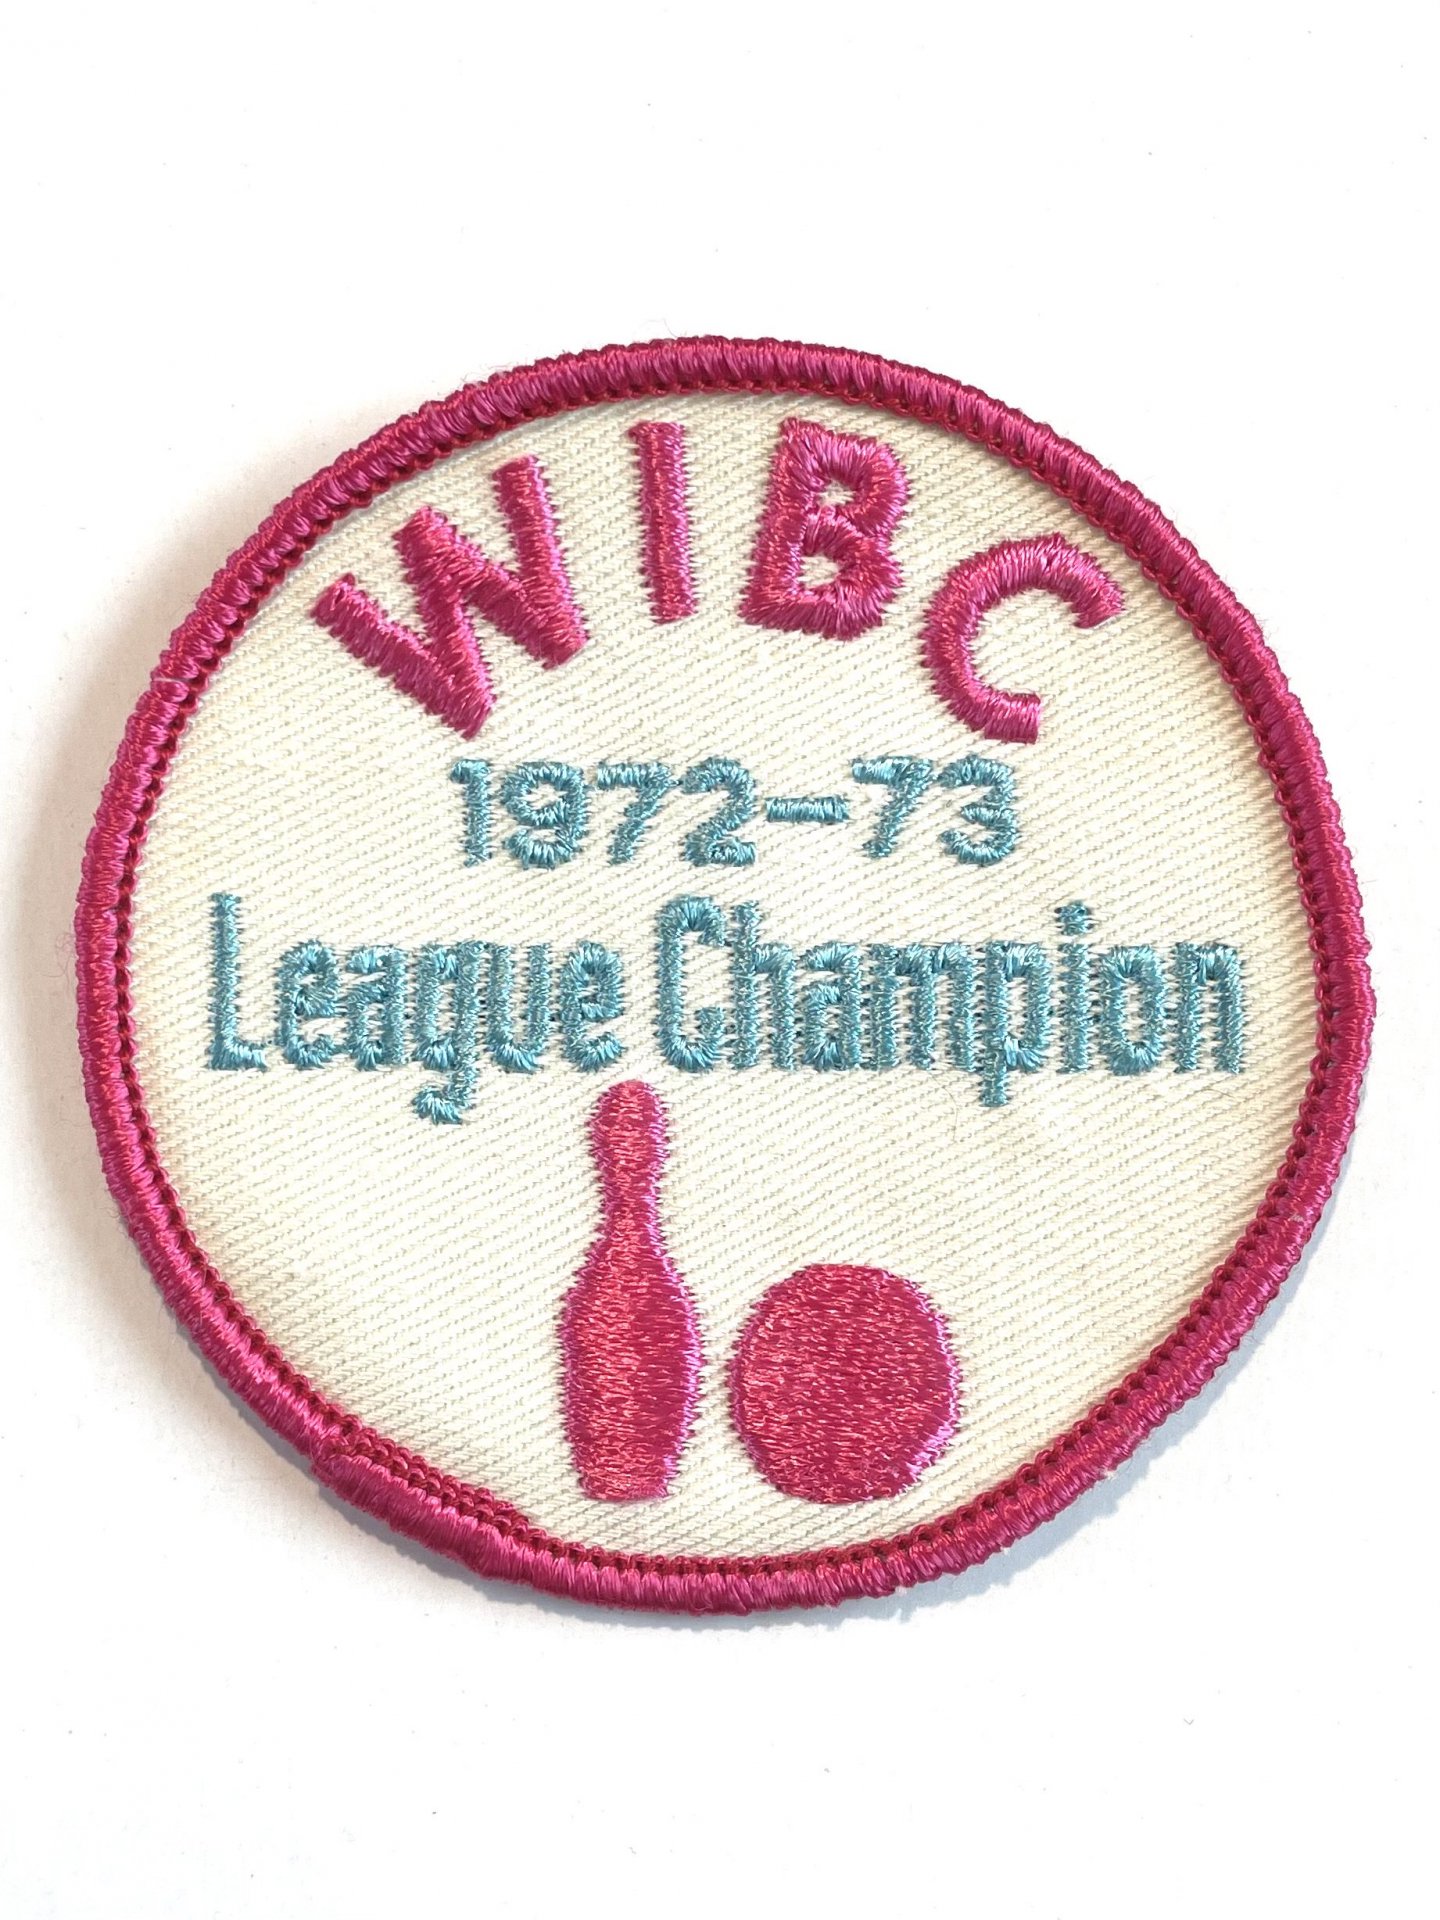 1972-73 